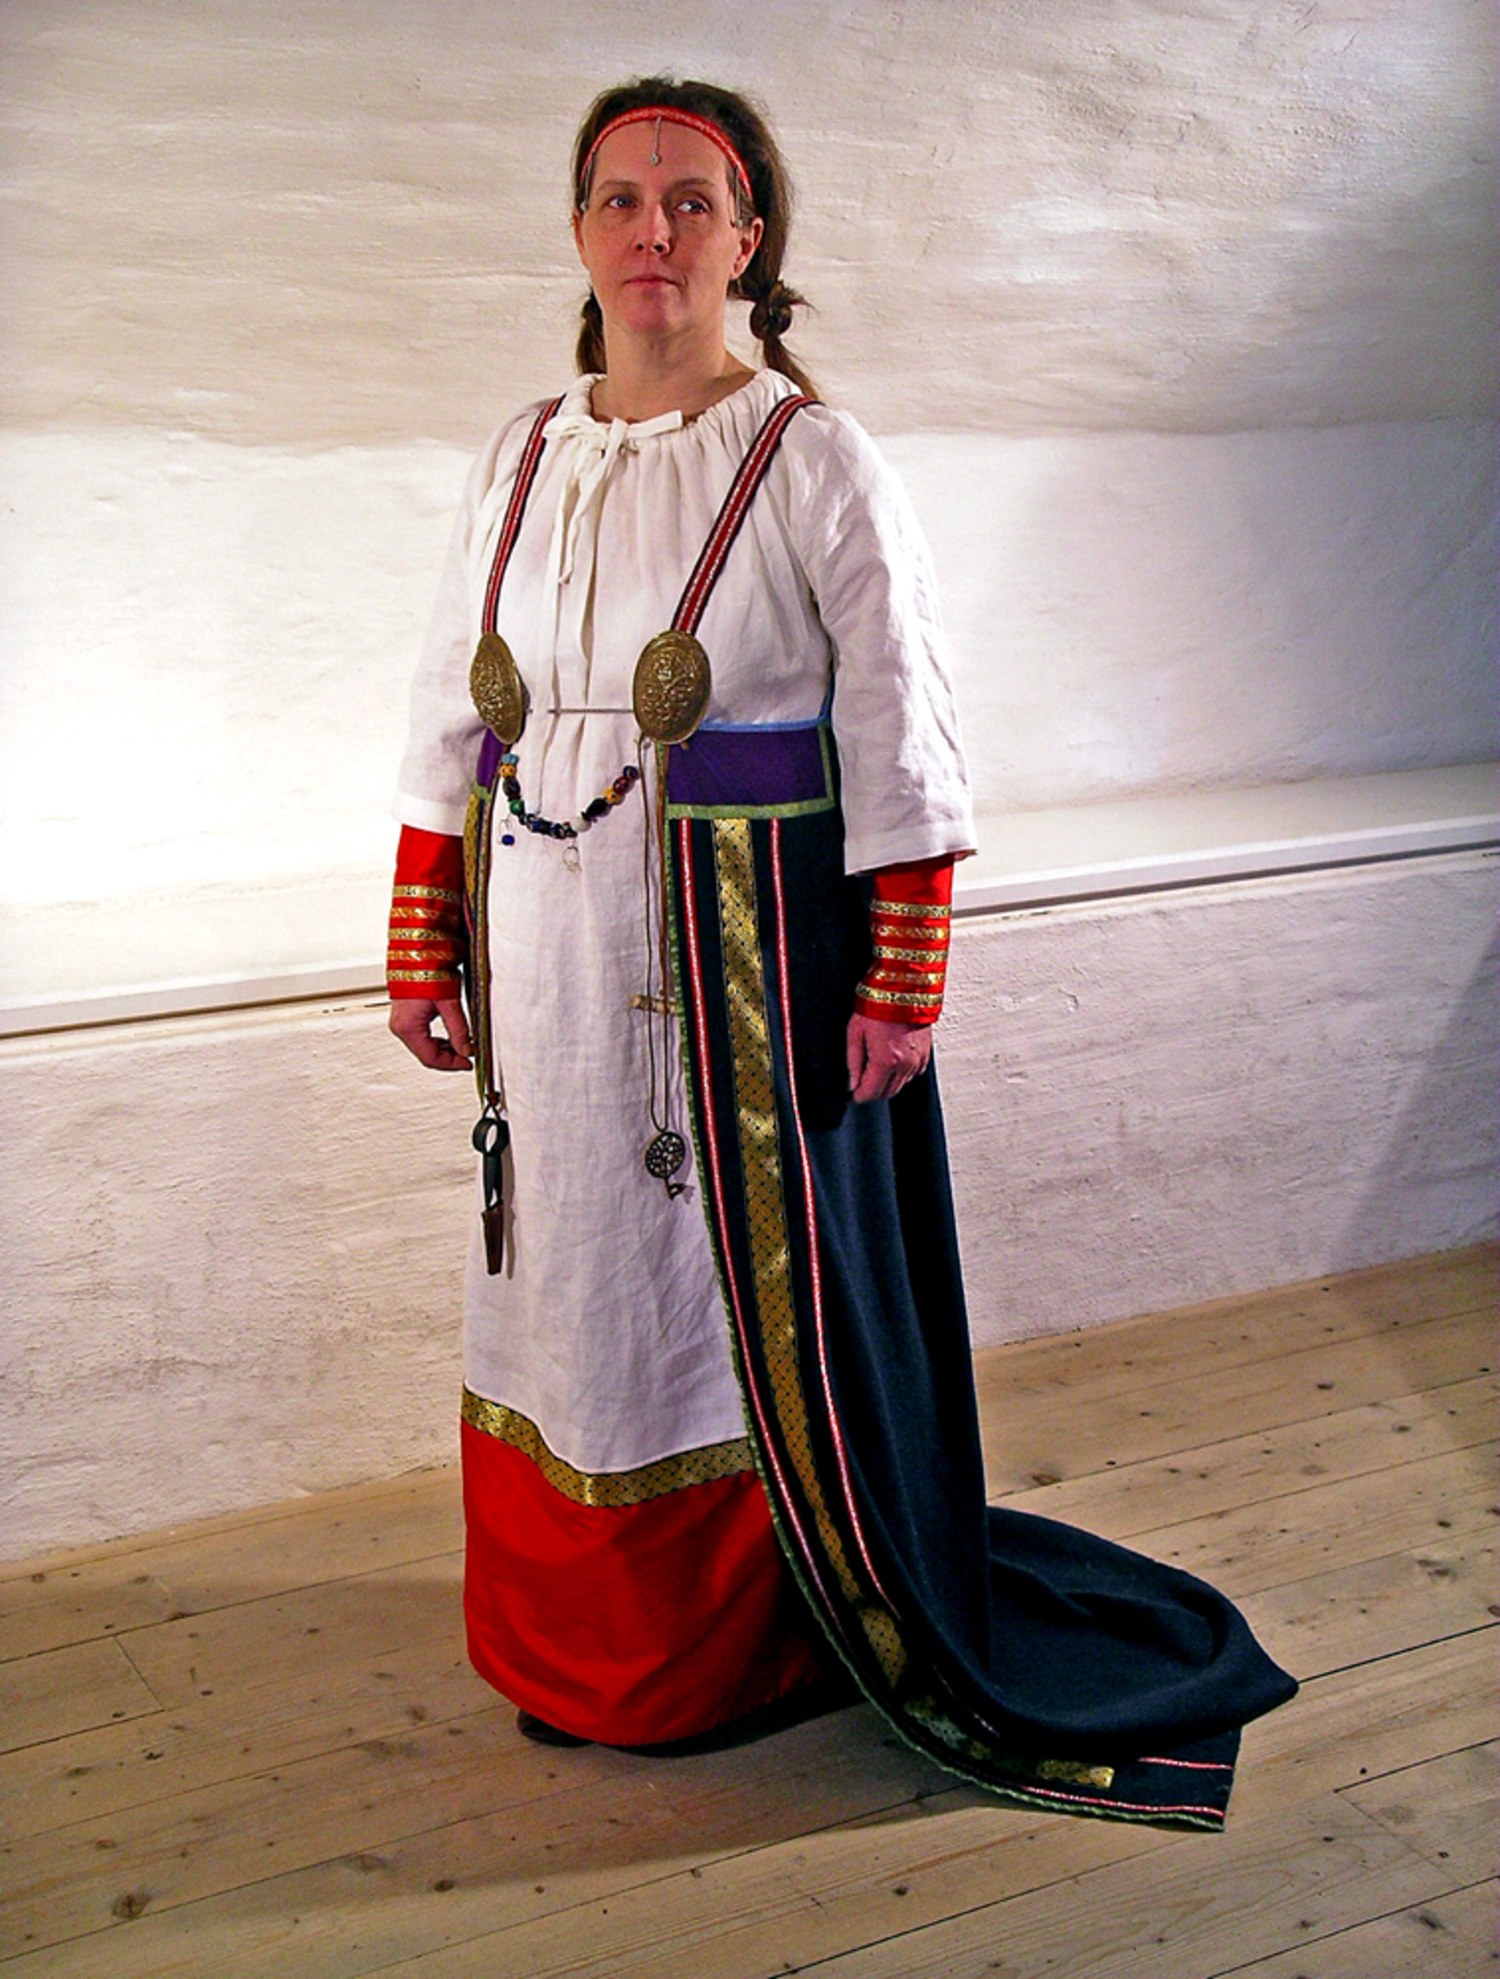 Viking Maker ~ dress up historical scandinavians